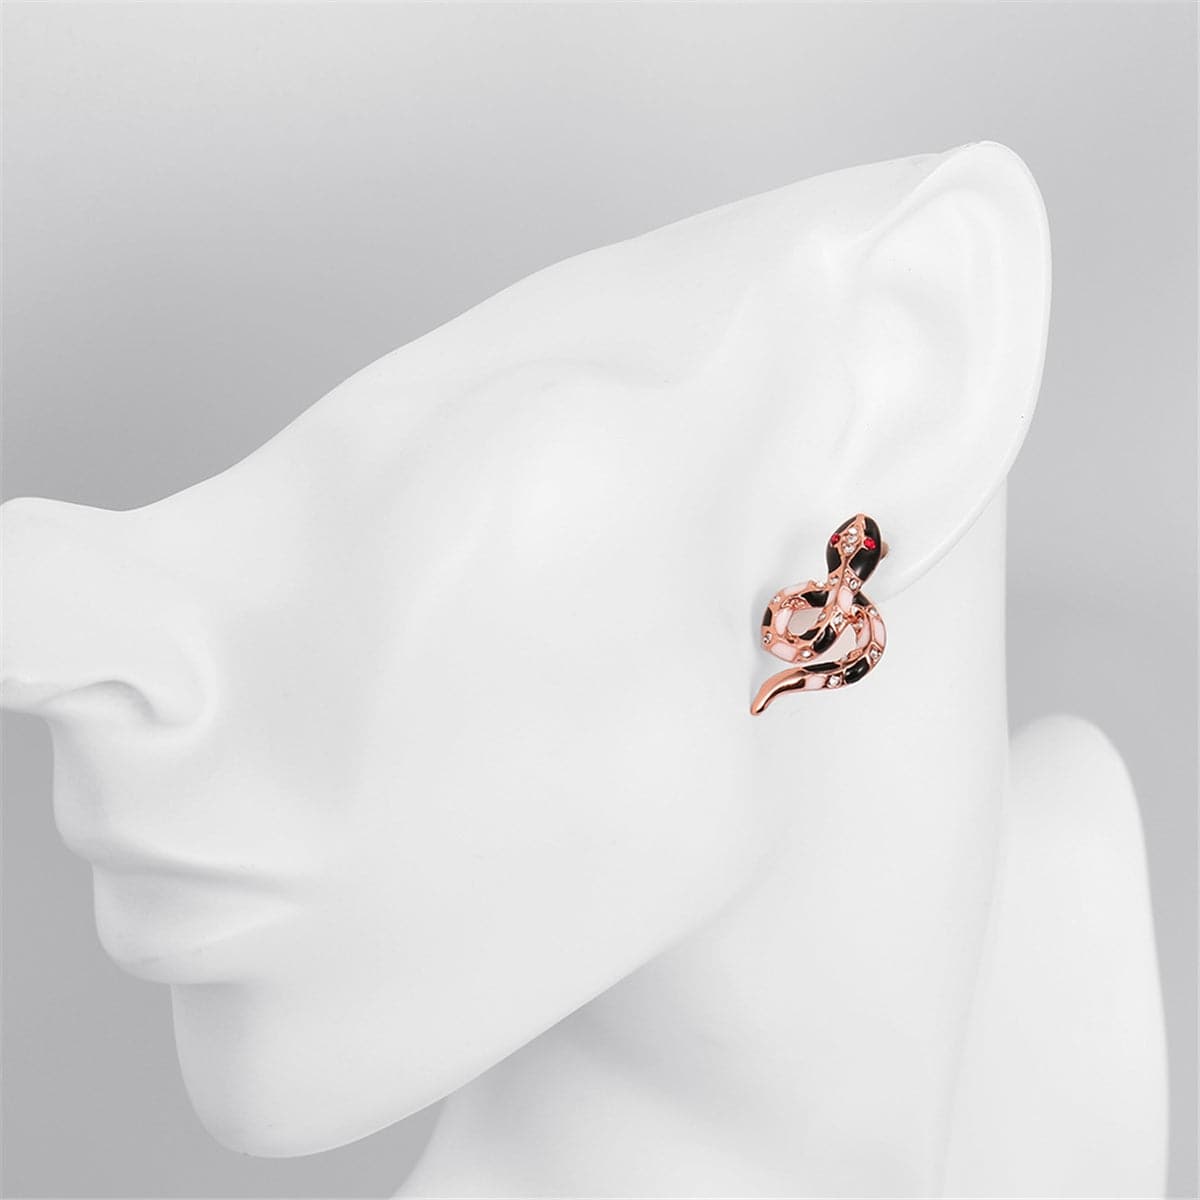 Cubic Zirconia & Rose Goldtone Snake Stud Earrings - streetregion